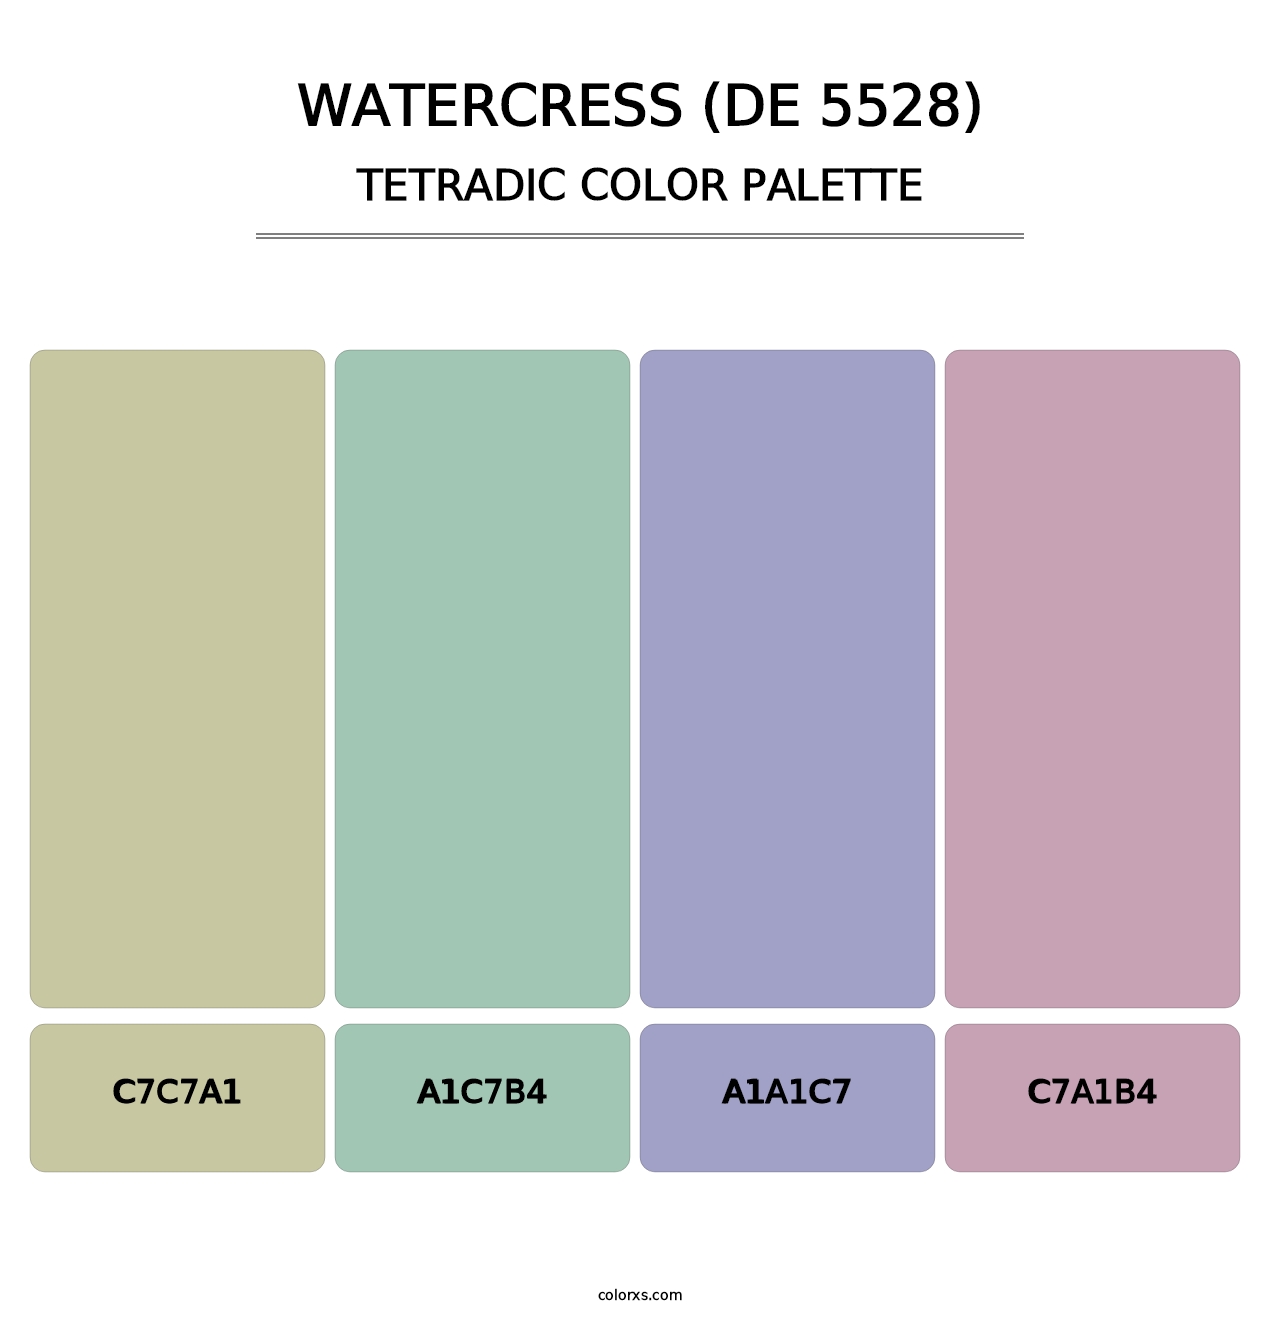 Watercress (DE 5528) - Tetradic Color Palette